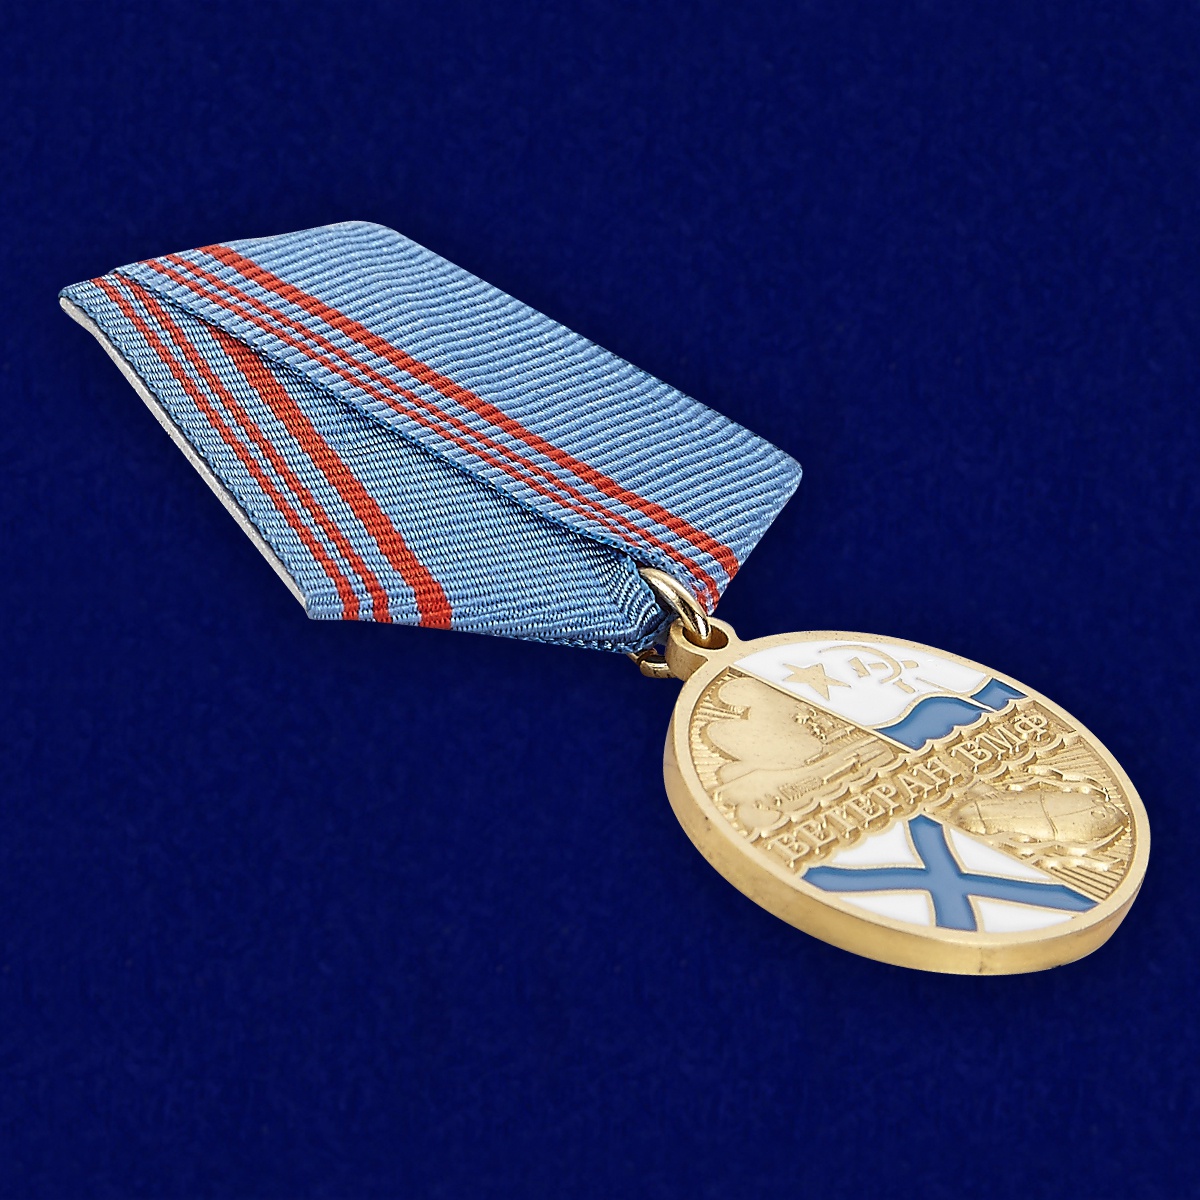 Медаль Ветеран ВМФ России в футляре с удостоверением 